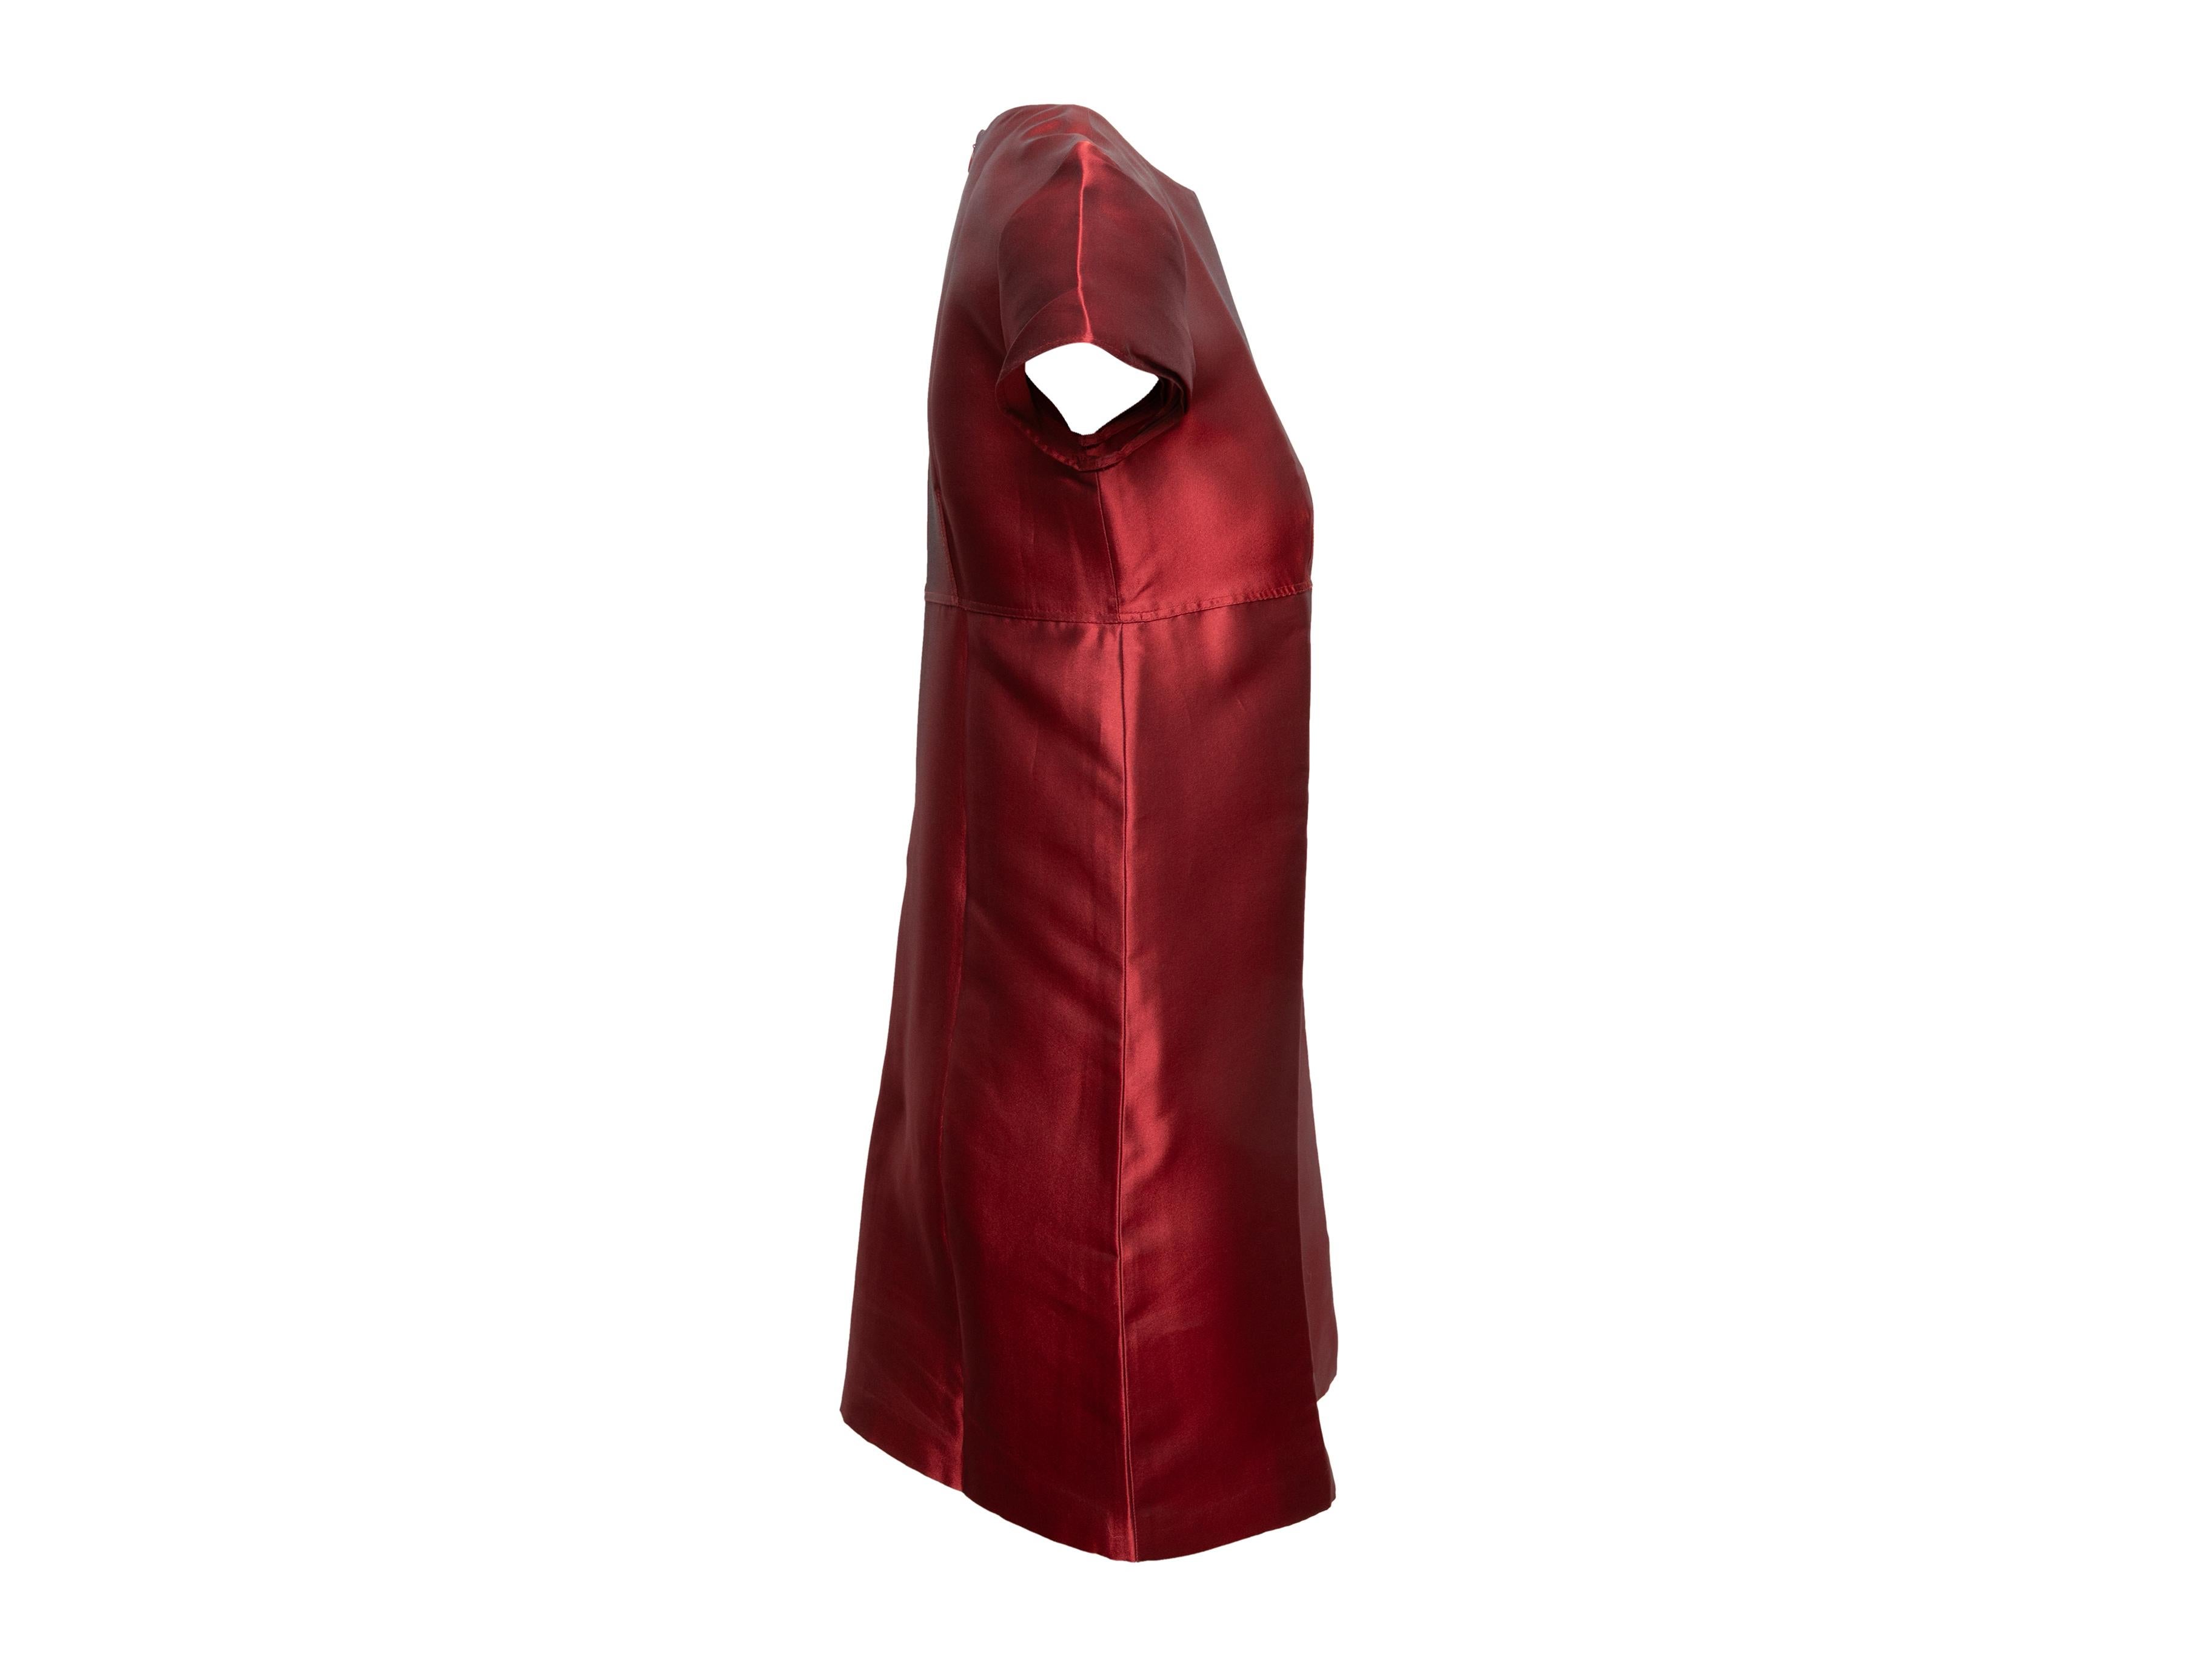 Mini robe à manches courtes en satin rouge signée Burberry. Col ras du cou. Fermeture à glissière au dos. Buste de 33